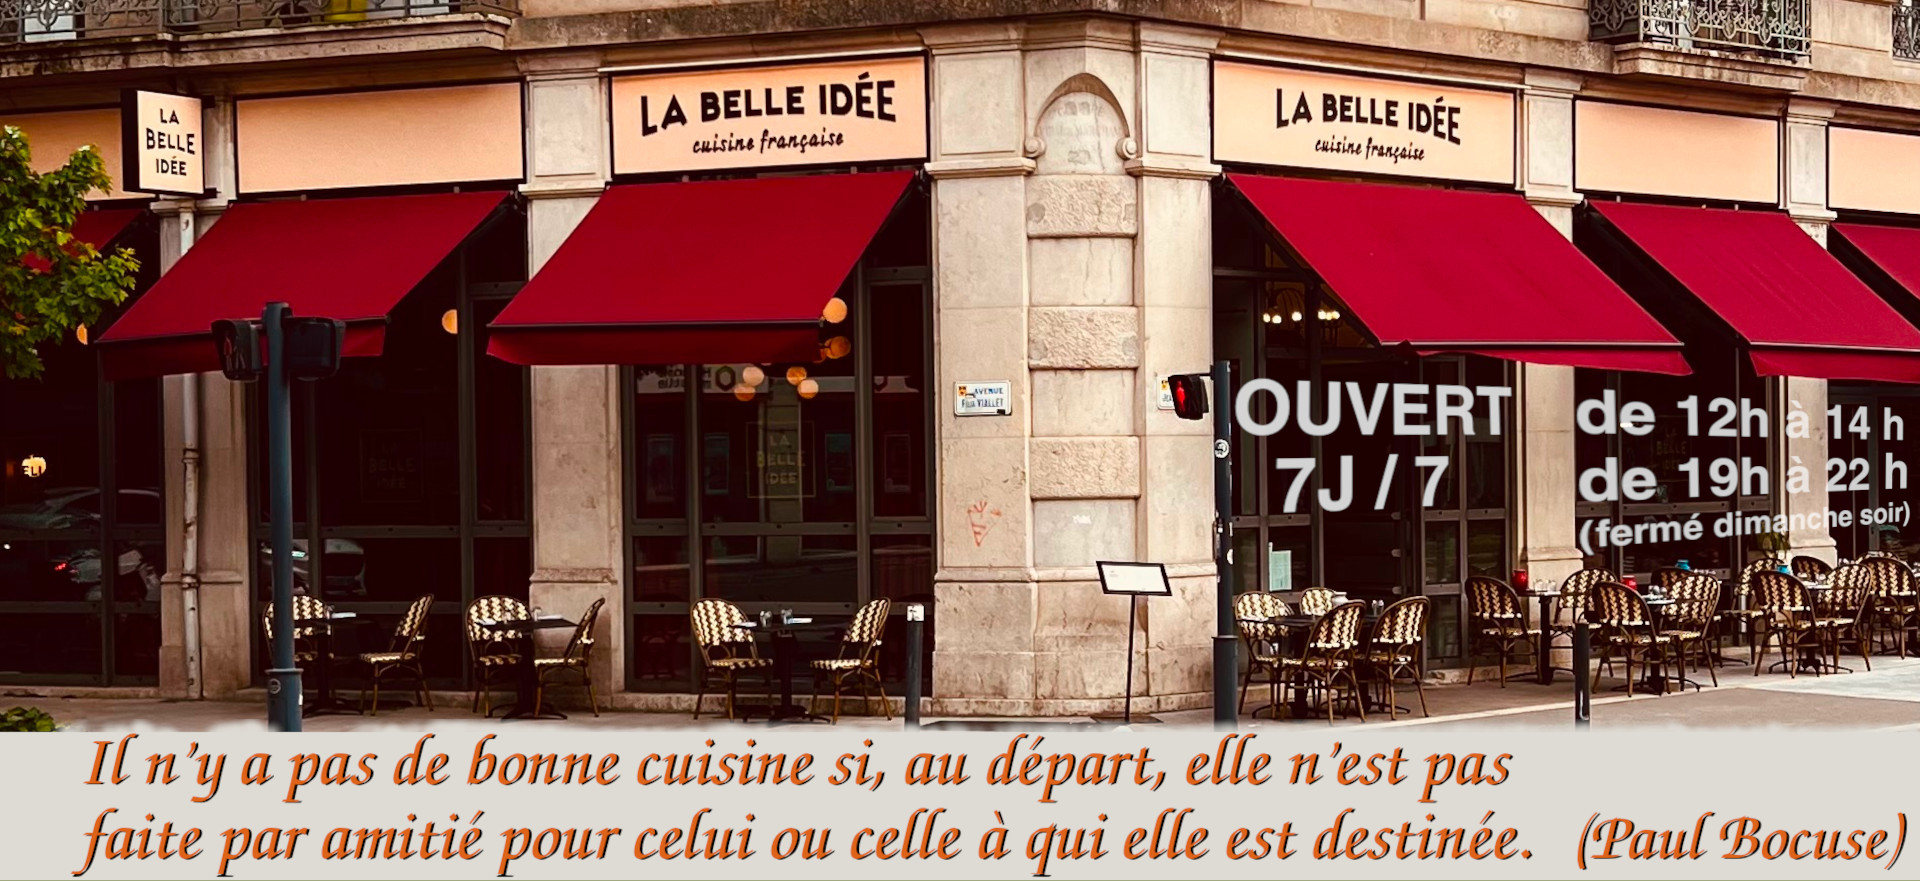 Restaurant La Belle Idée